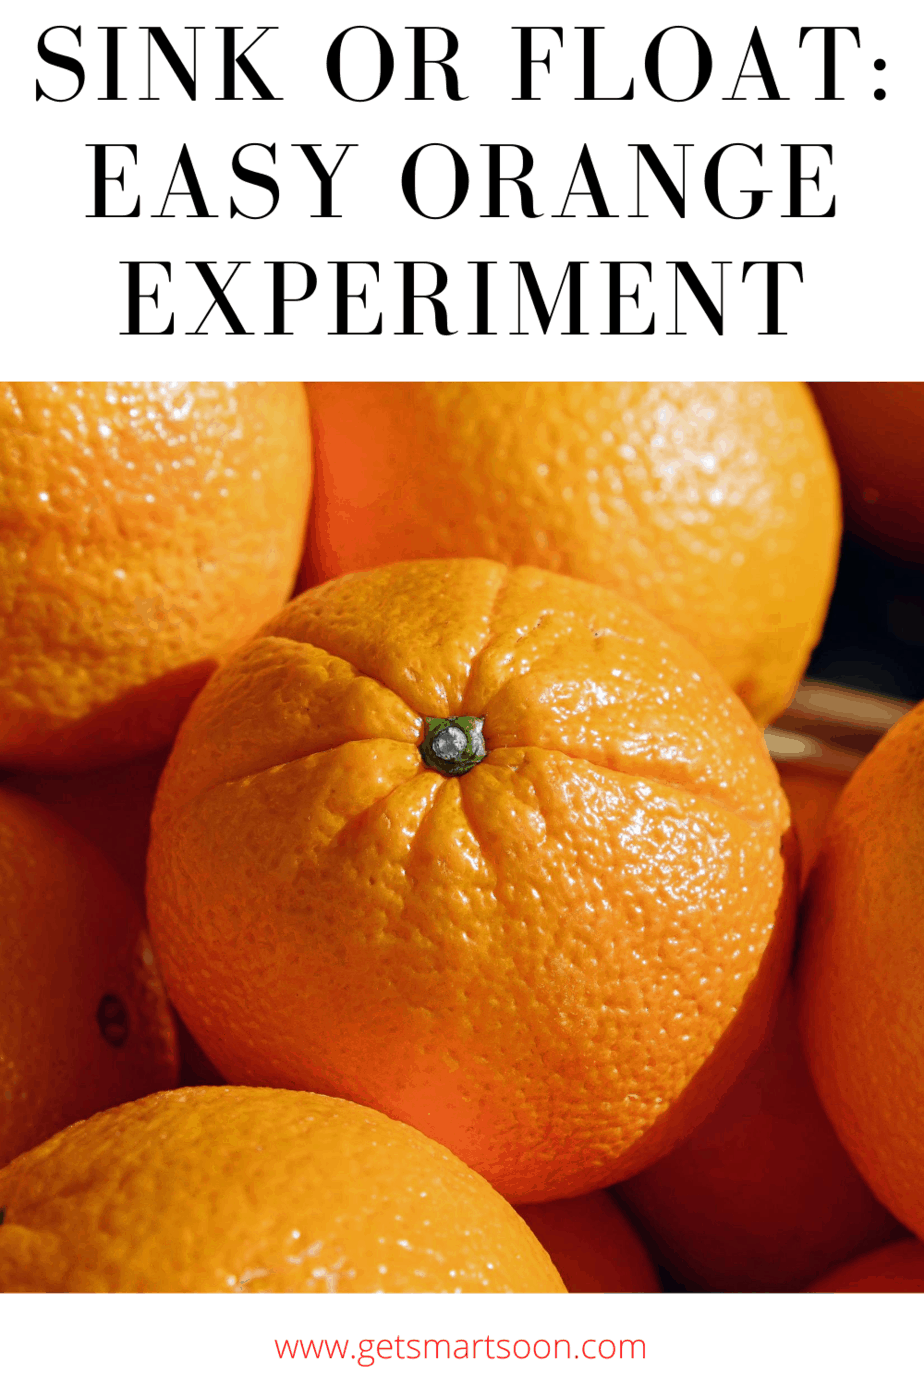 Sink or Float: Orange experiment